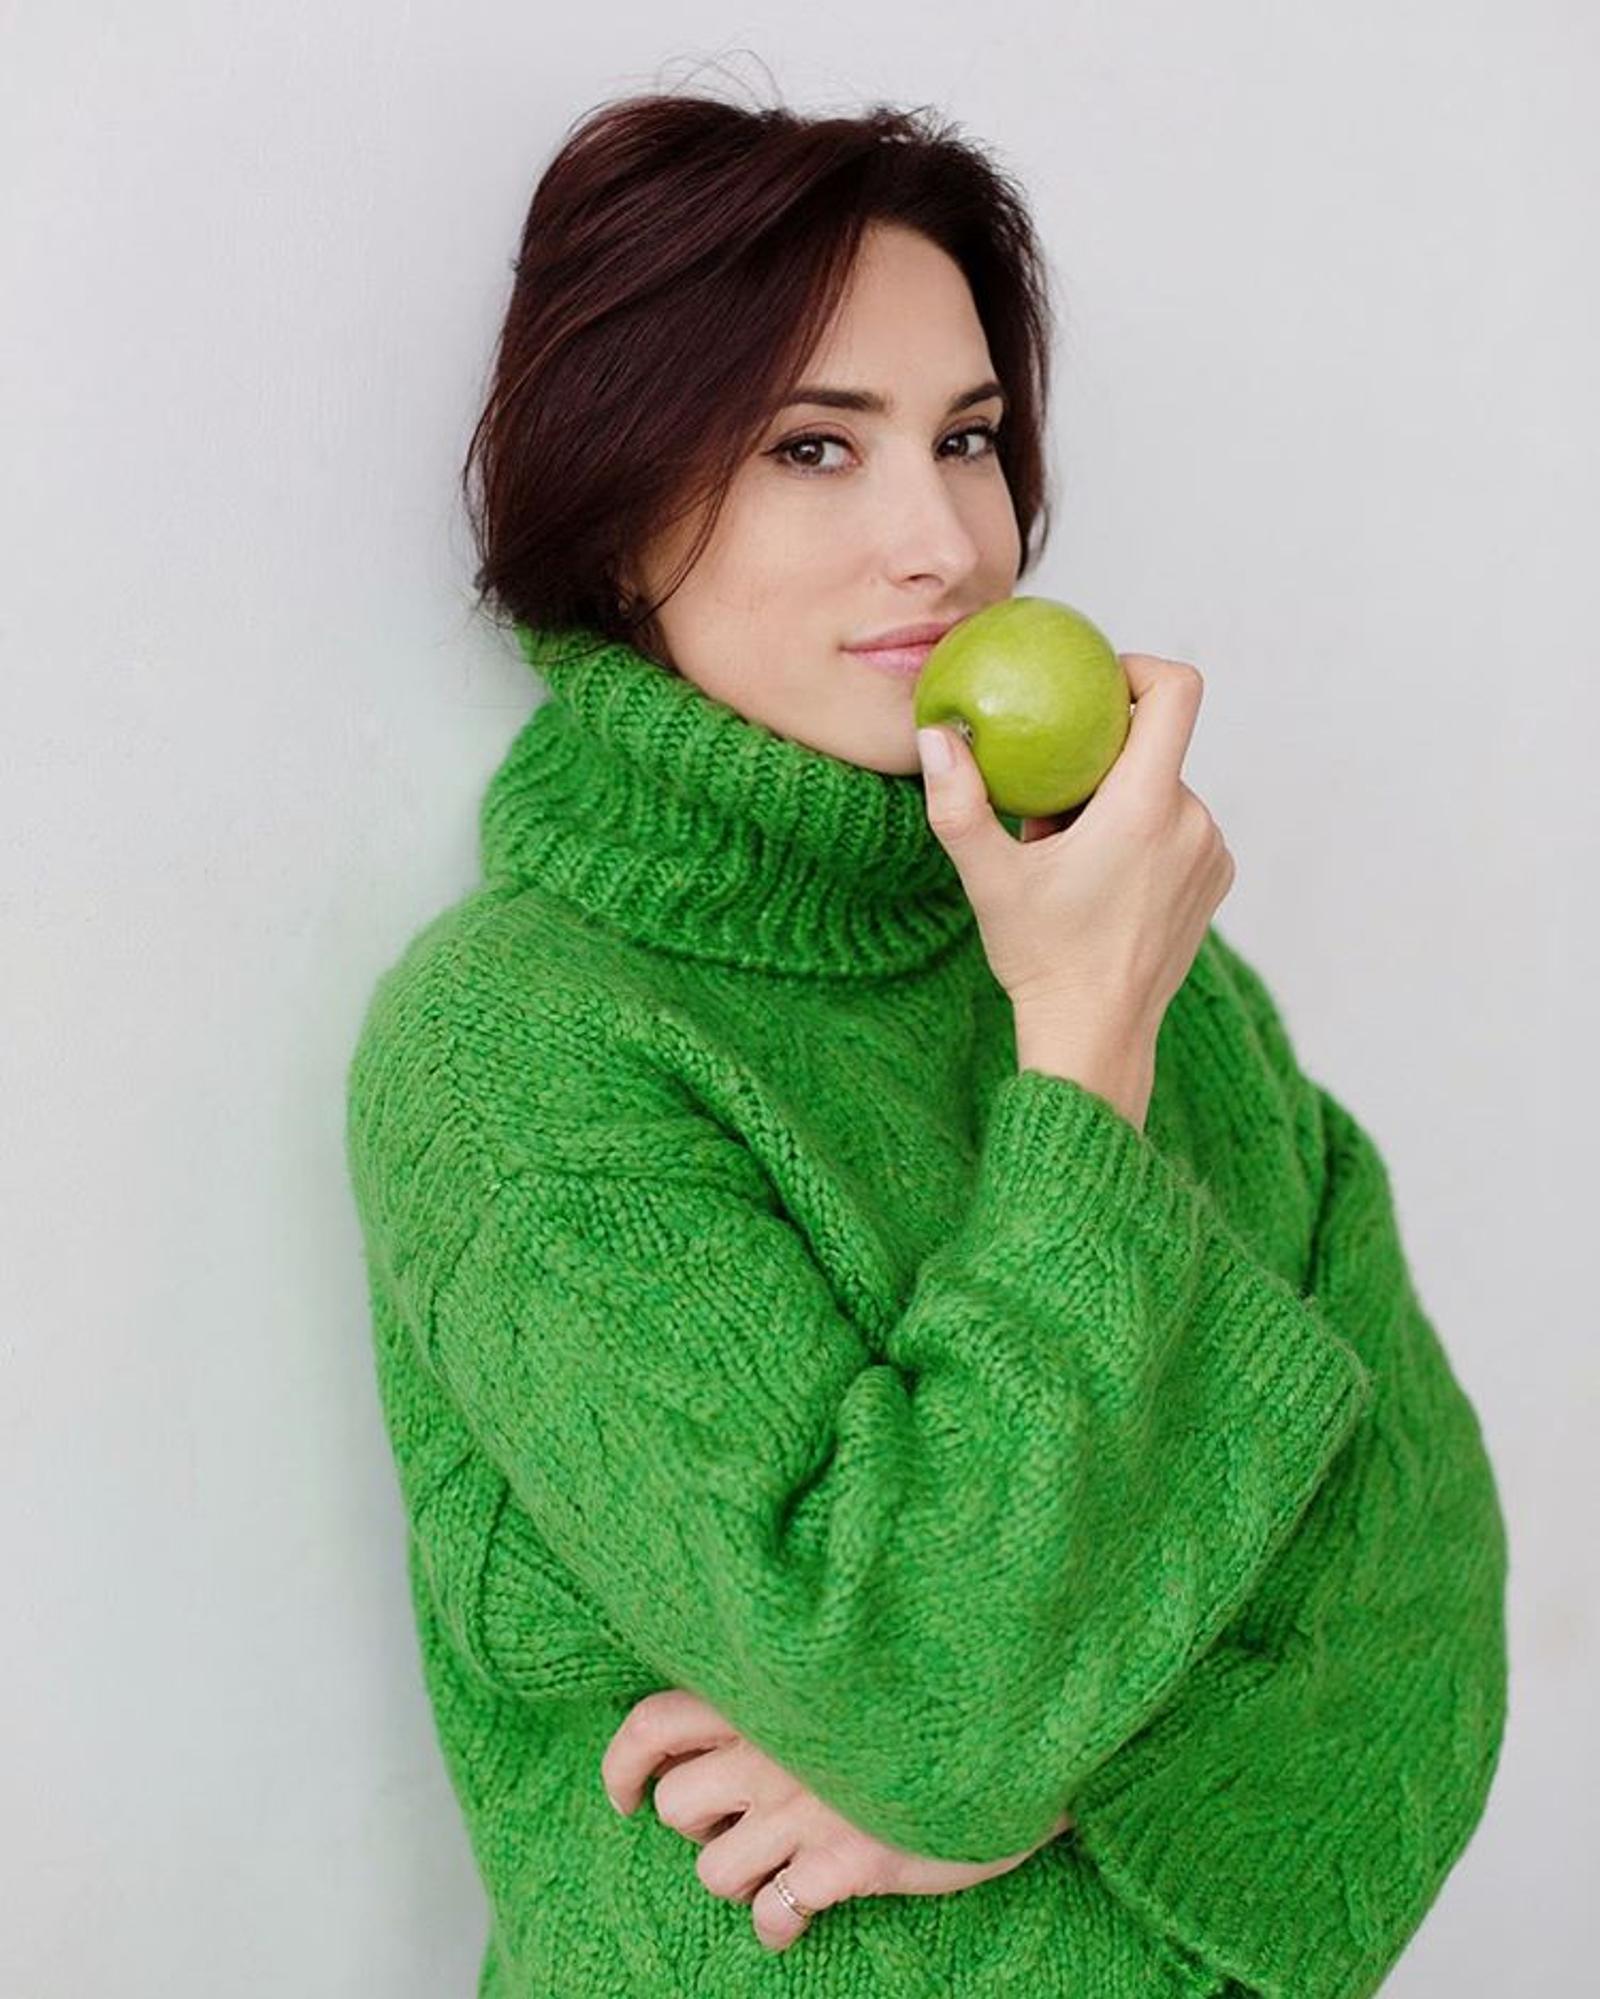 Блогер и телеведущая Мария Кравцова с яблоком